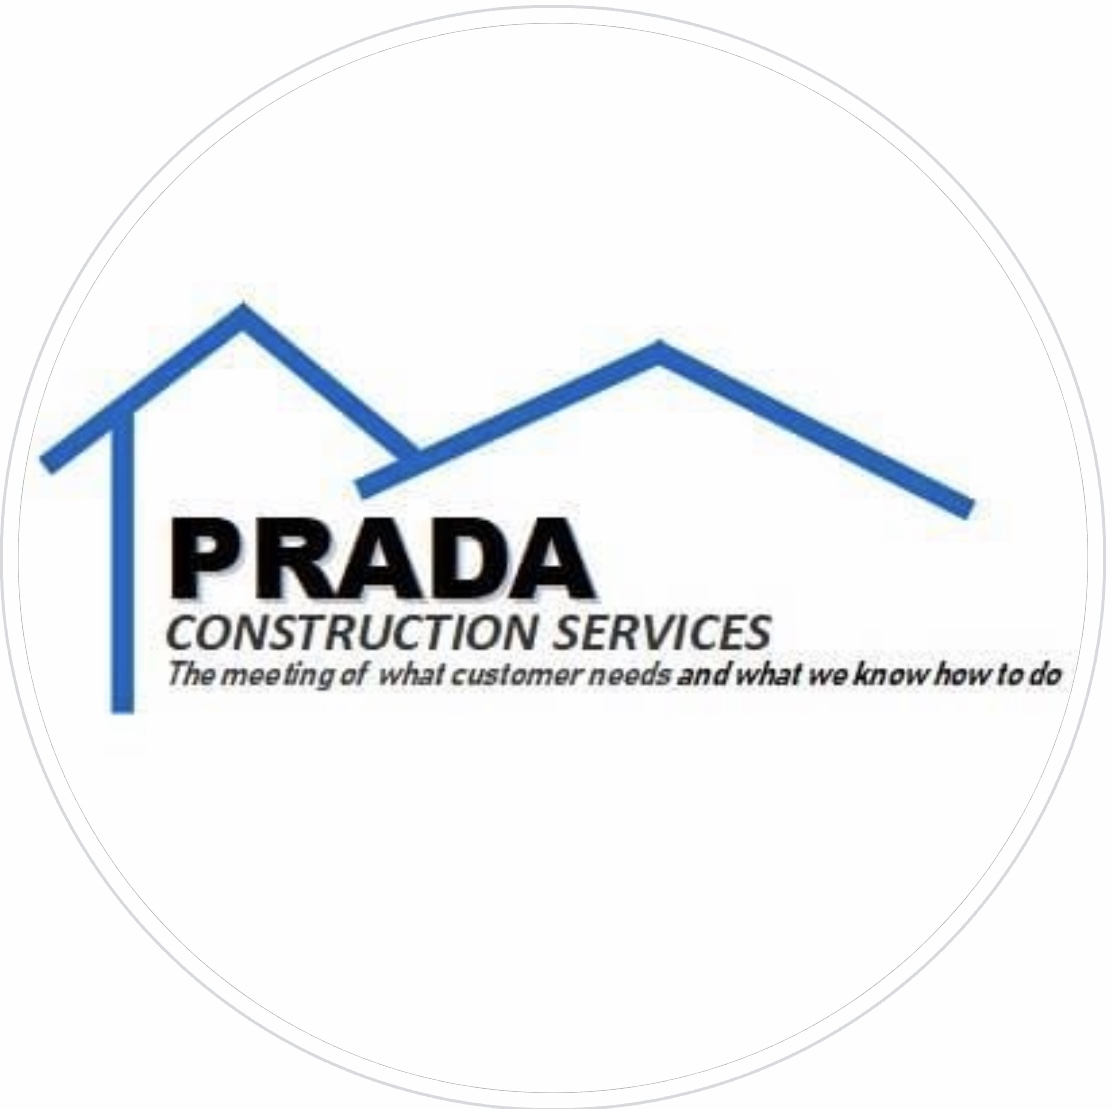 PRADA Construction Services Logo